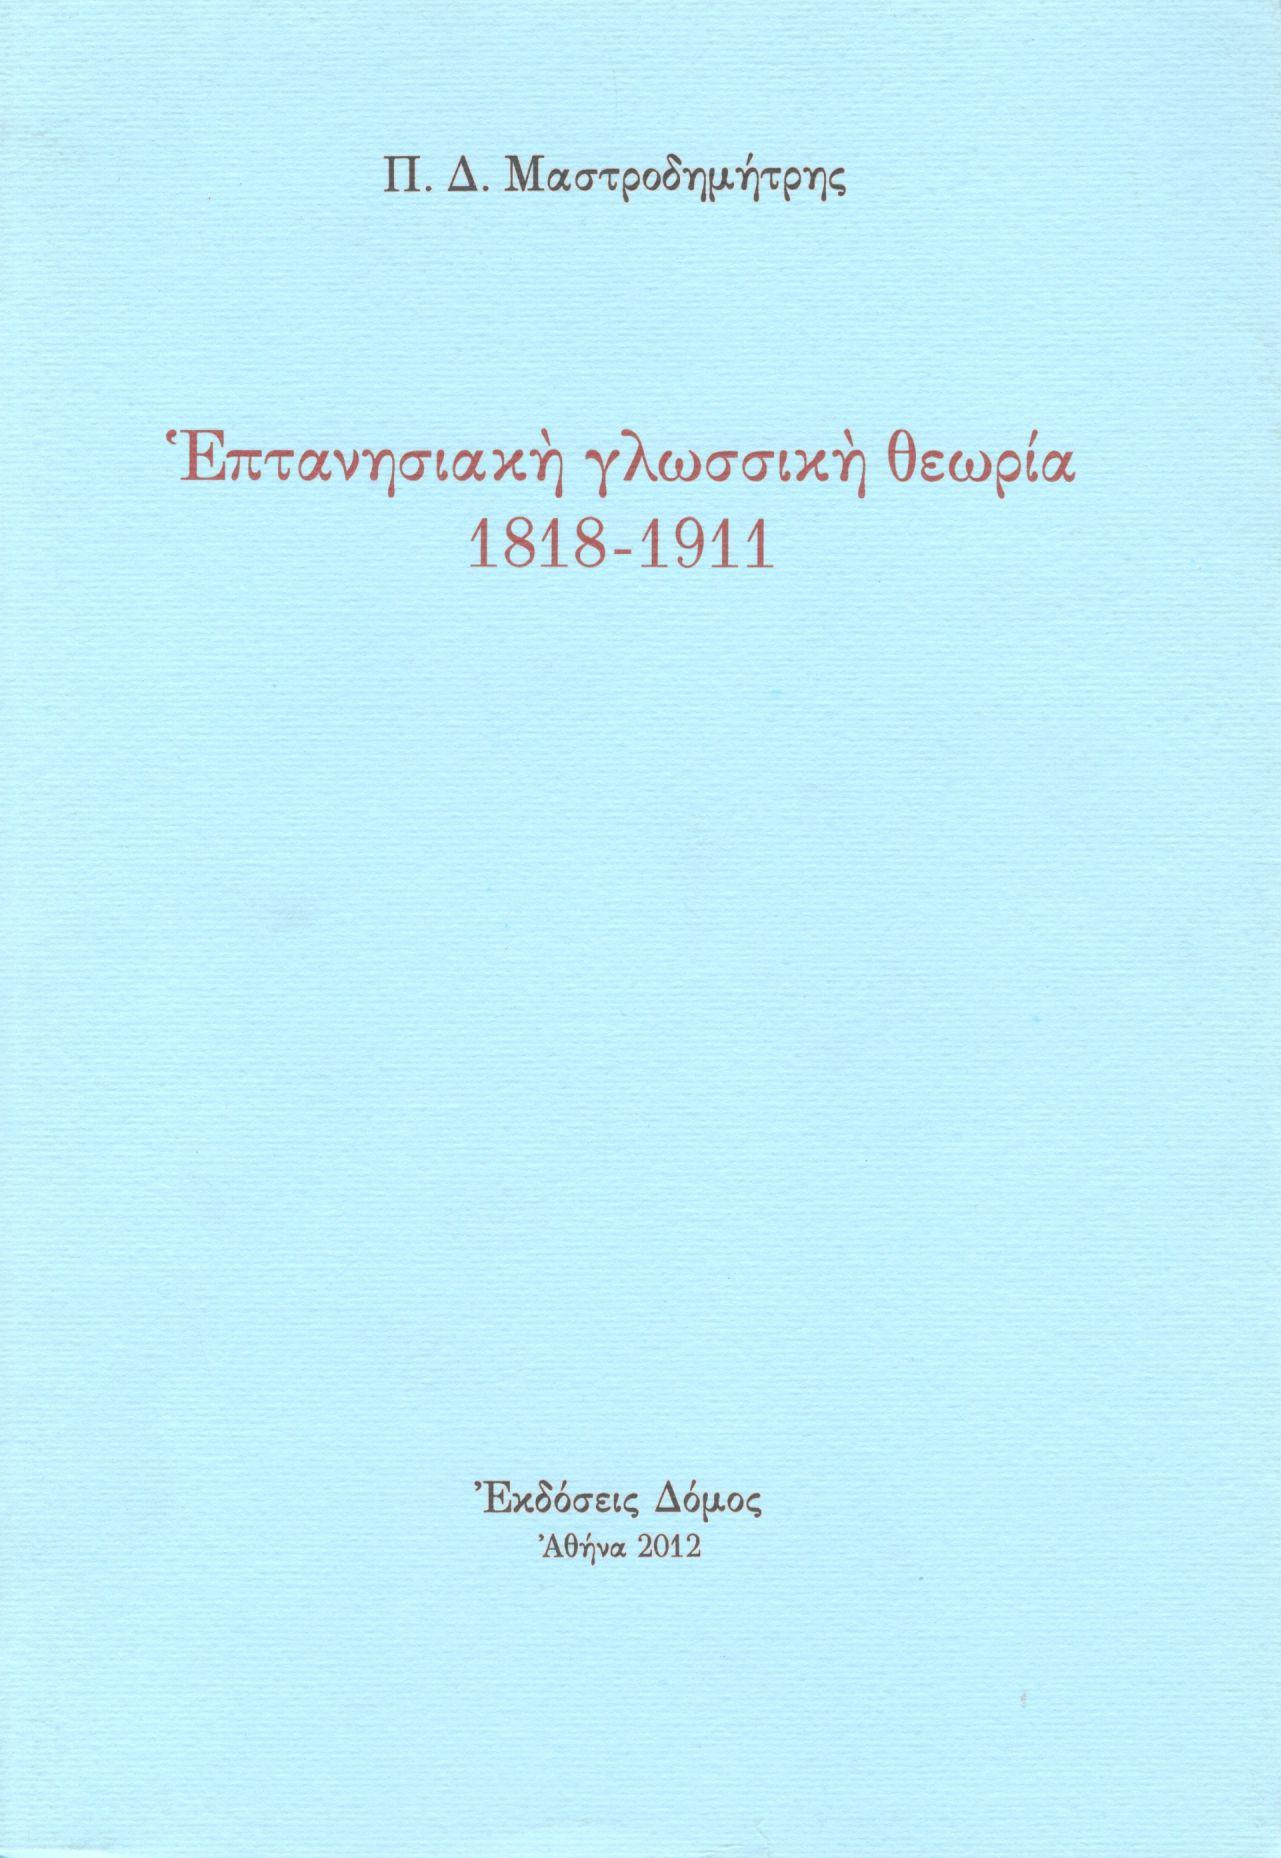 ΕΠΤΑΝΗΣΙΑΚΗ ΓΛΩΣΣΙΚΗ ΘΕΩΡΙΑ 1818-1911